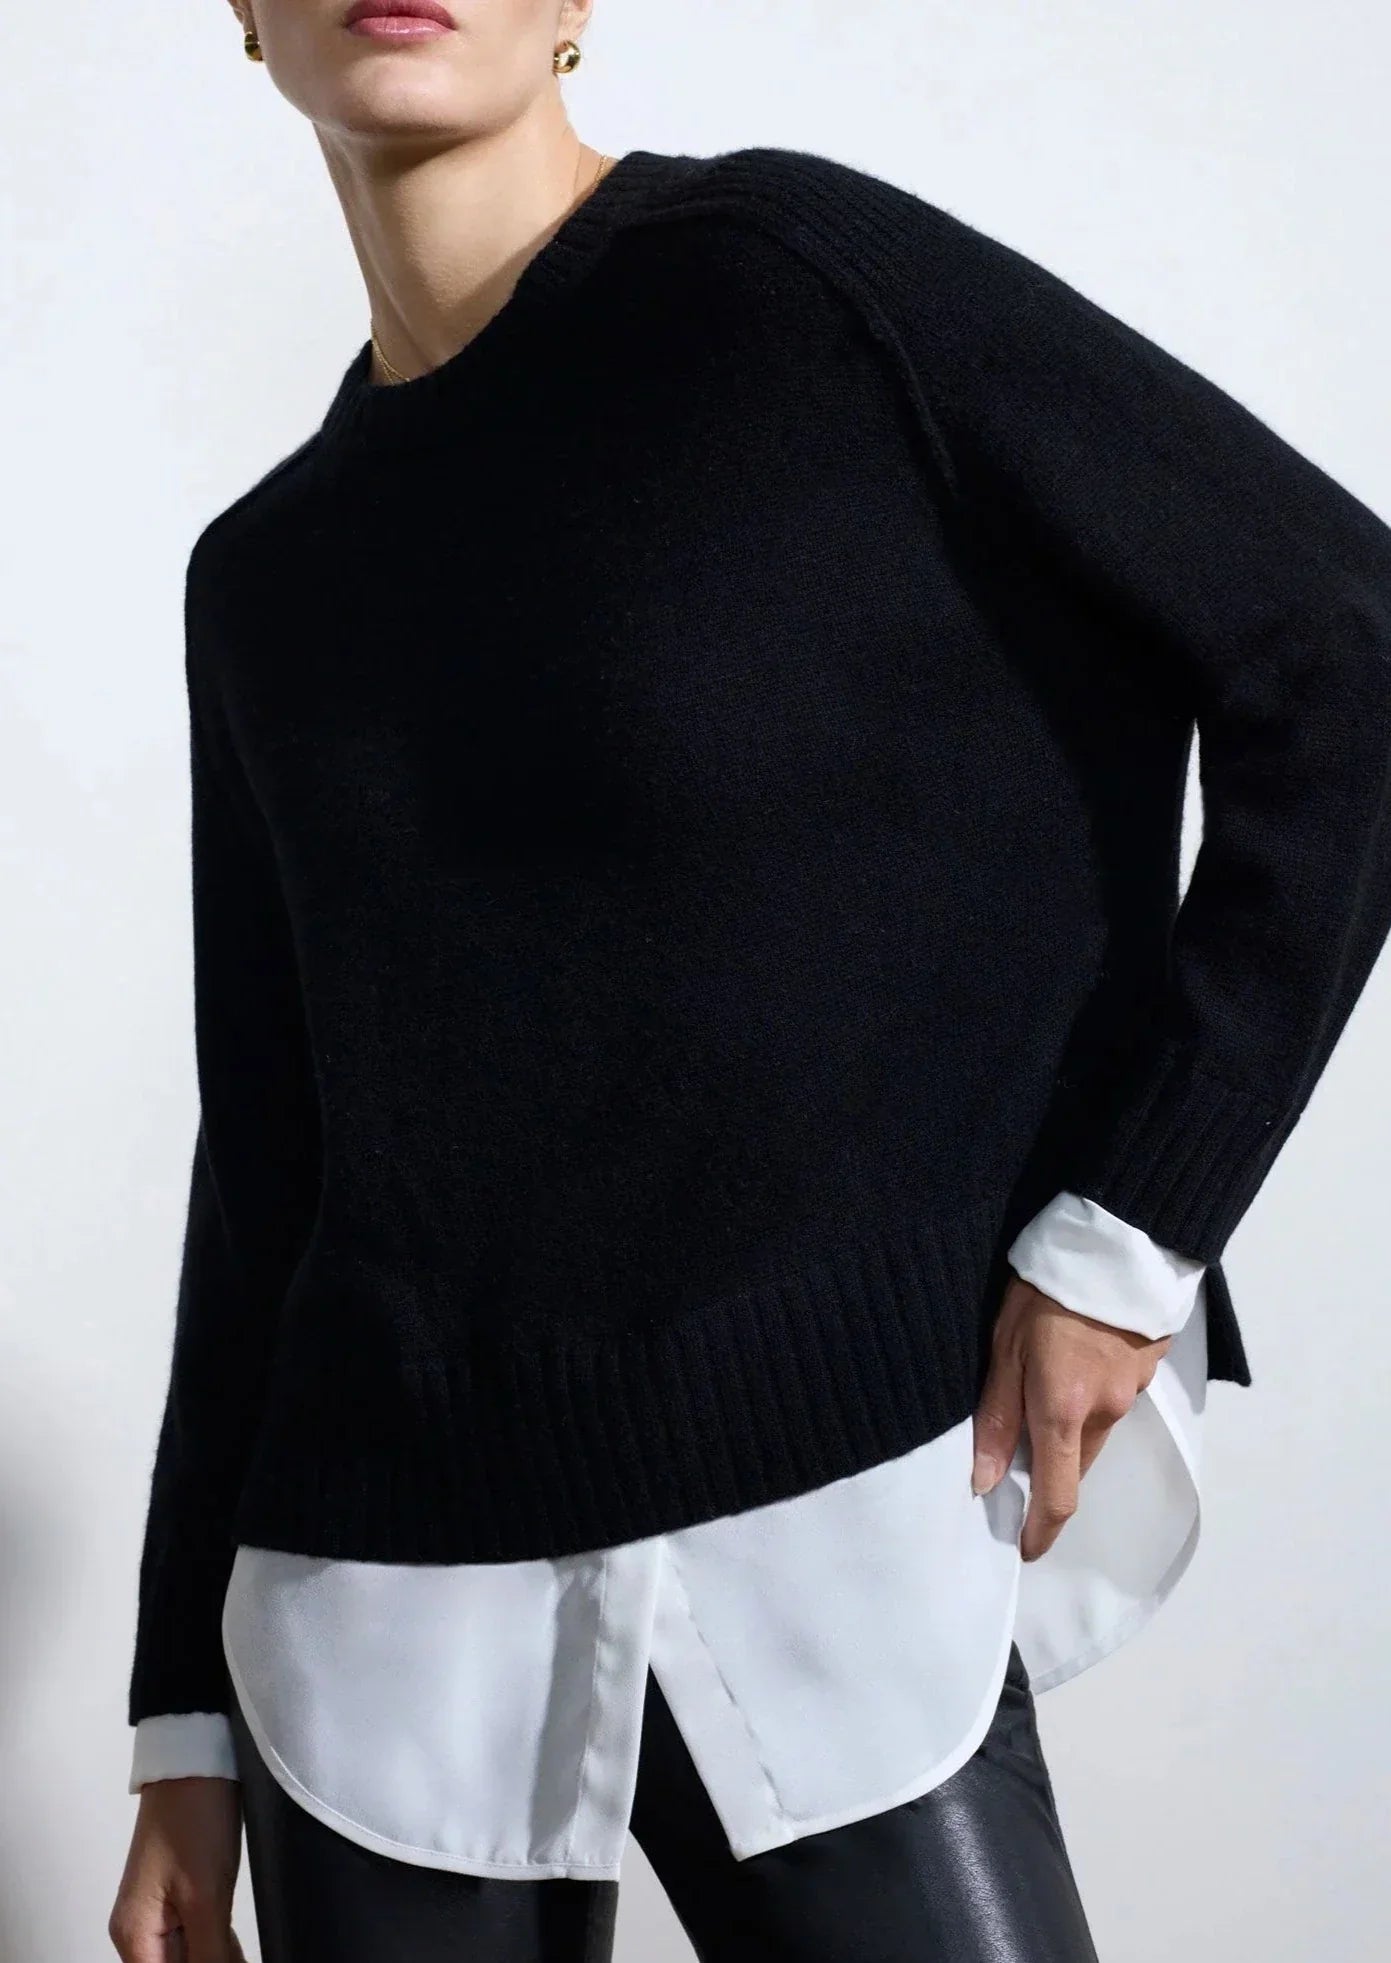 Brochu Walker Parson Crew Looker Sweater - Black/White